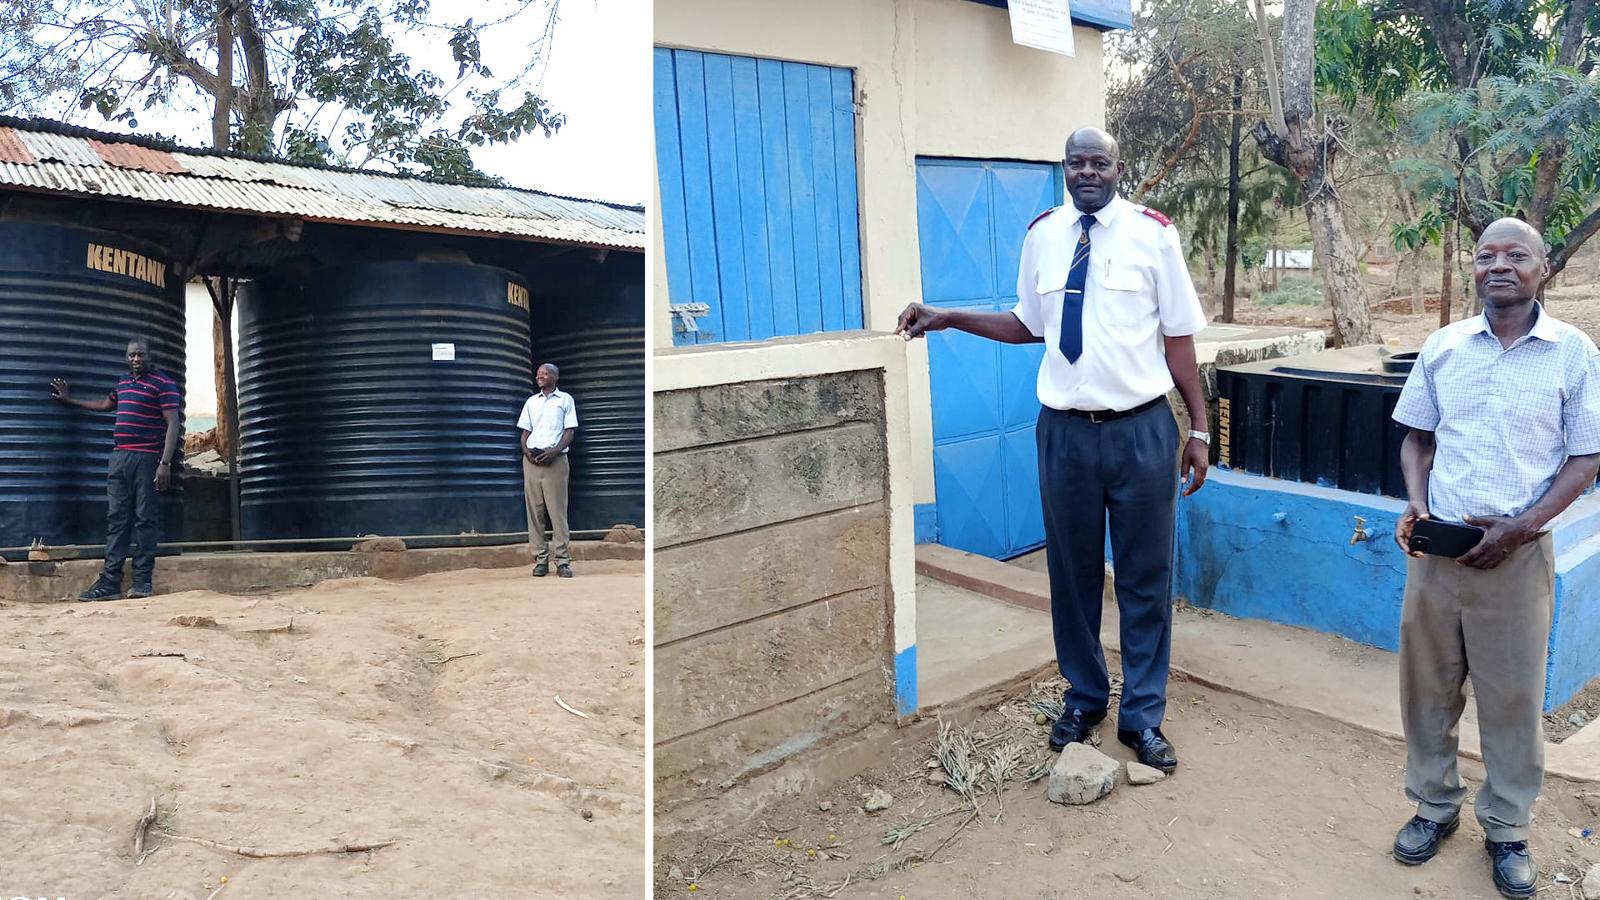 Vattentankar vid en skola i Kenya - två män varav en i Frälsningsarméns uniform står framför ett hus med blå dörrar där det finns toaletter. 